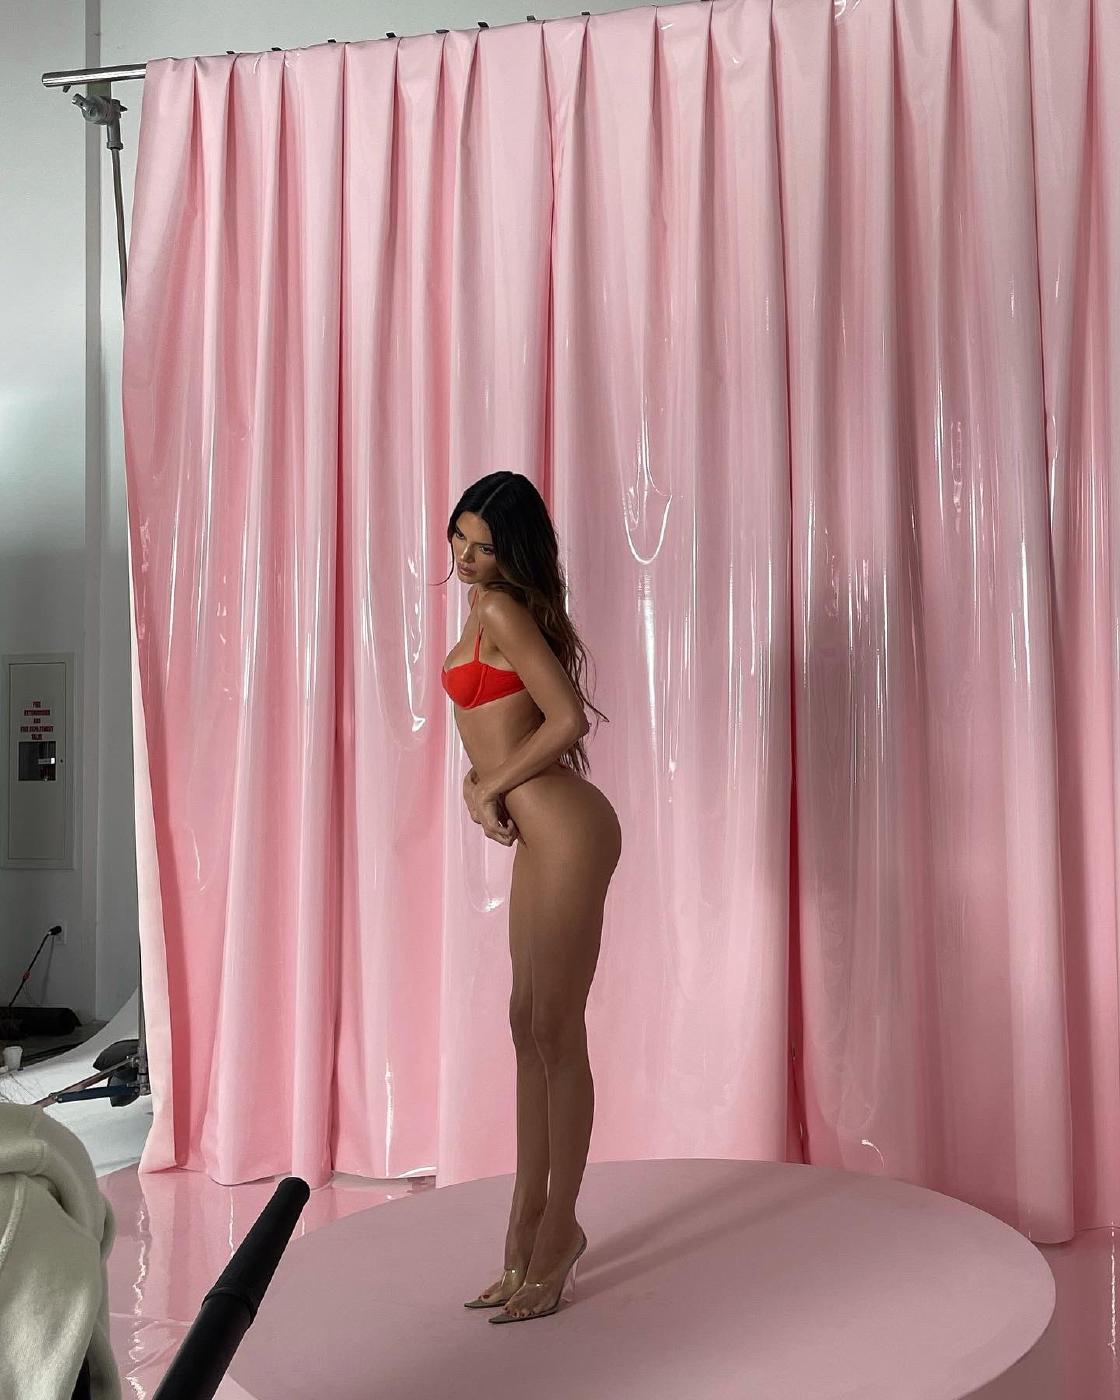 Kendall Jenner Skims Thong Photoshoot Leaked 50